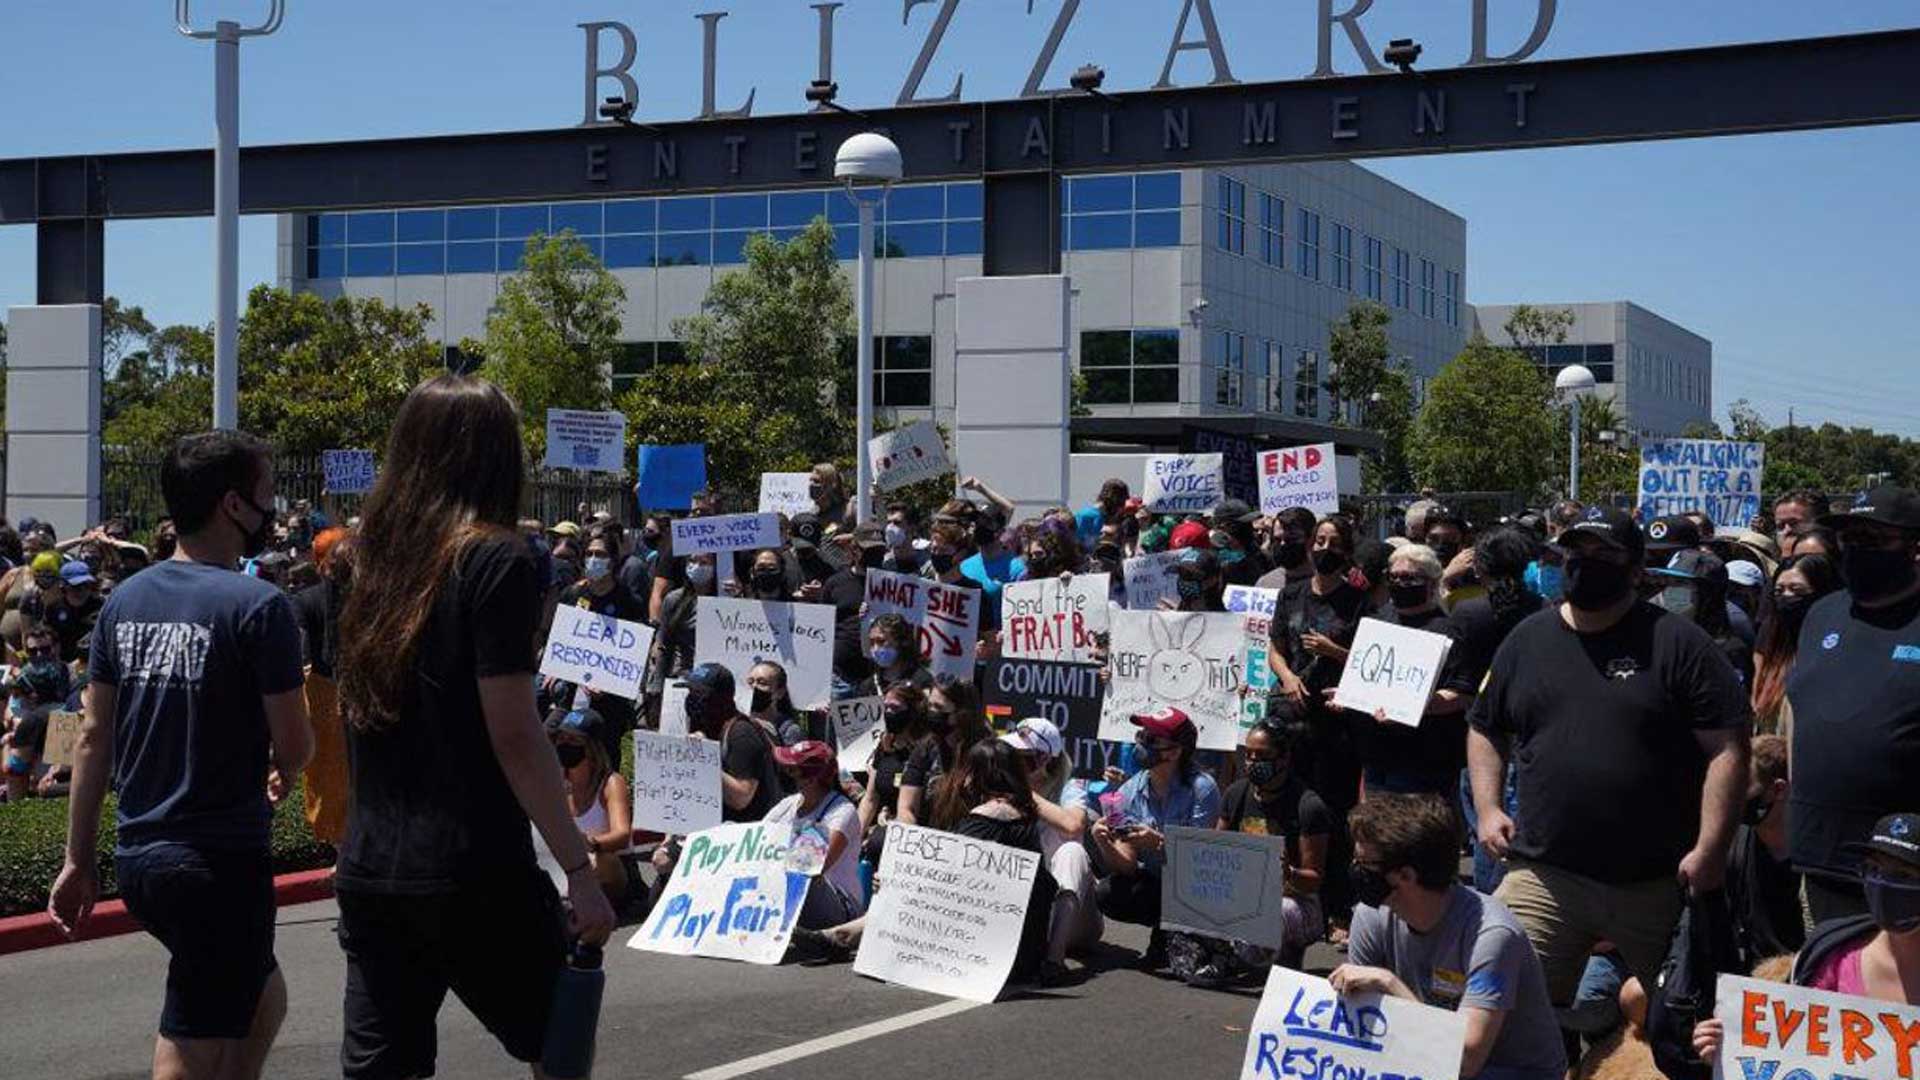 اعتراض گسترده به بلیزارد در مقابل ساختمان بزرگ شرکت